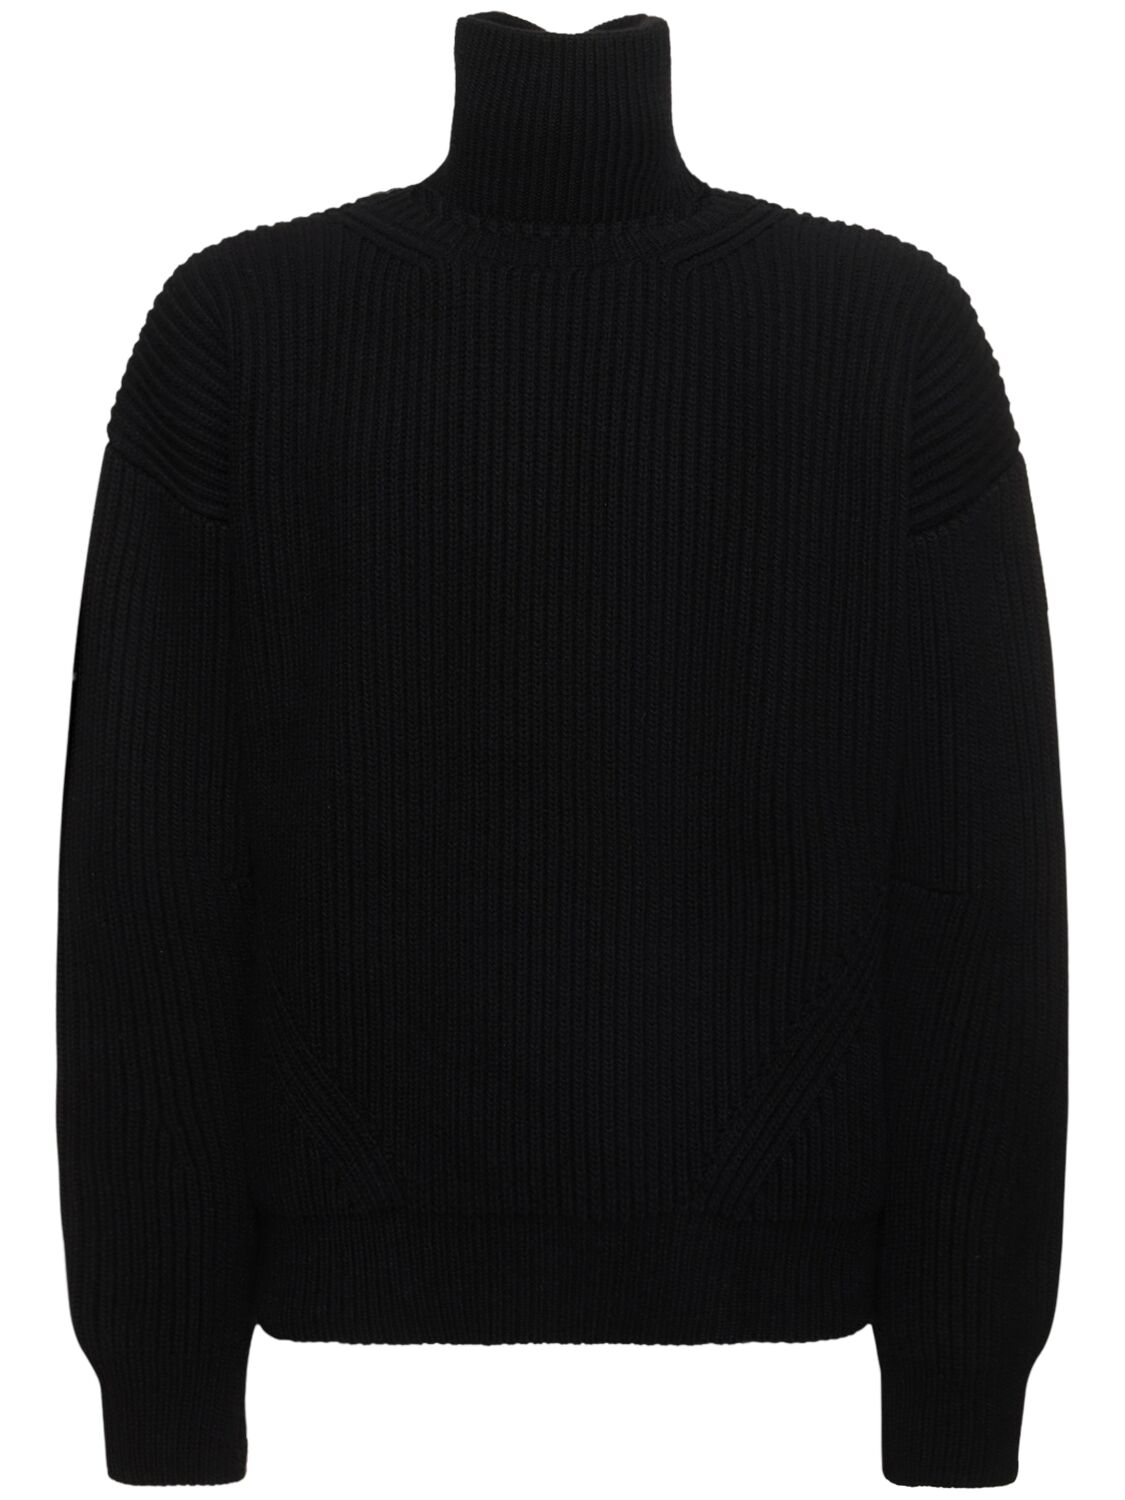 Geirnart Oversized Wool Knit Sweater – MEN > CLOTHING > KNITWEAR